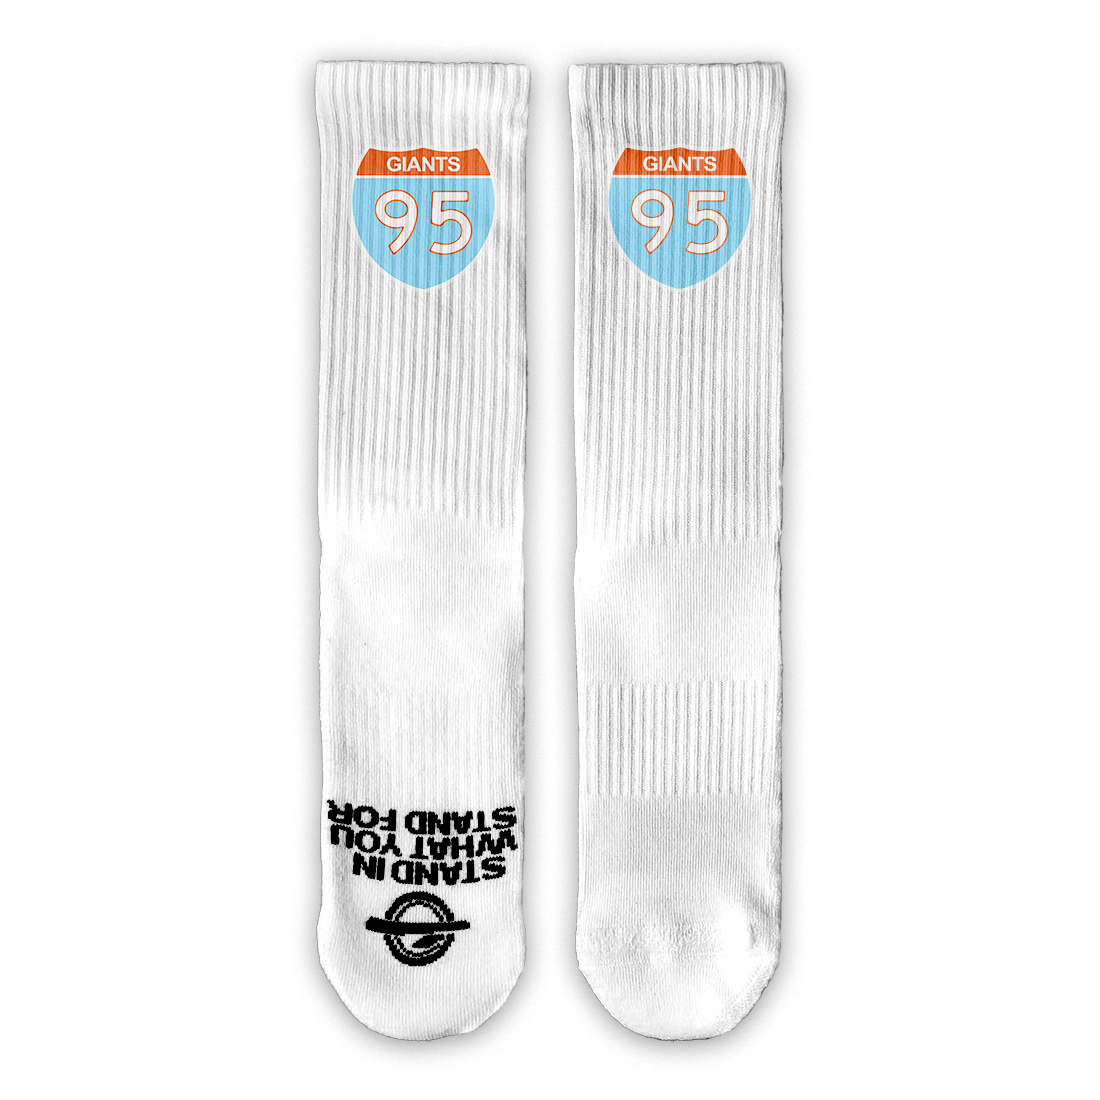 95 Giants Lifestyle Socks